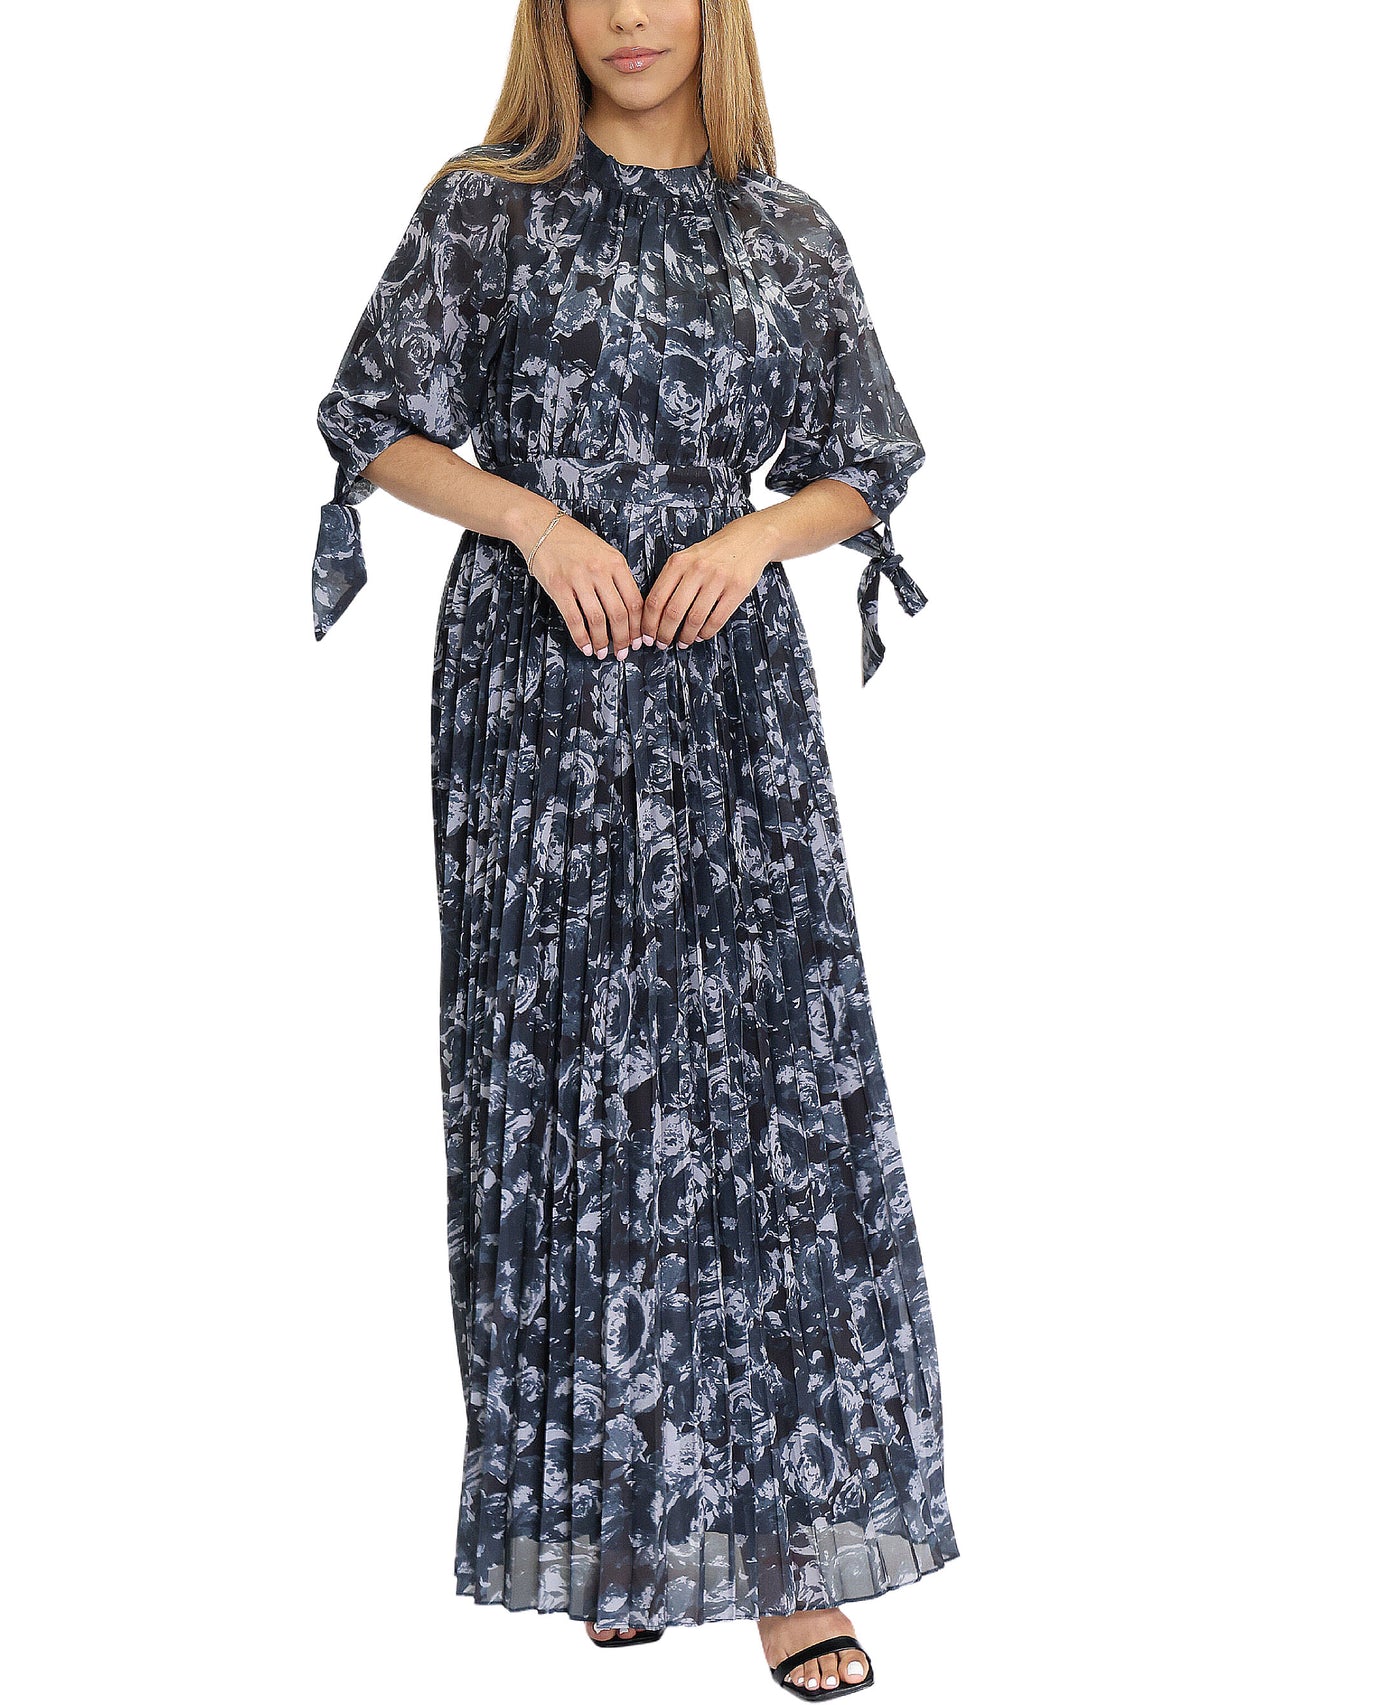 Printed Pleated Dress image 1